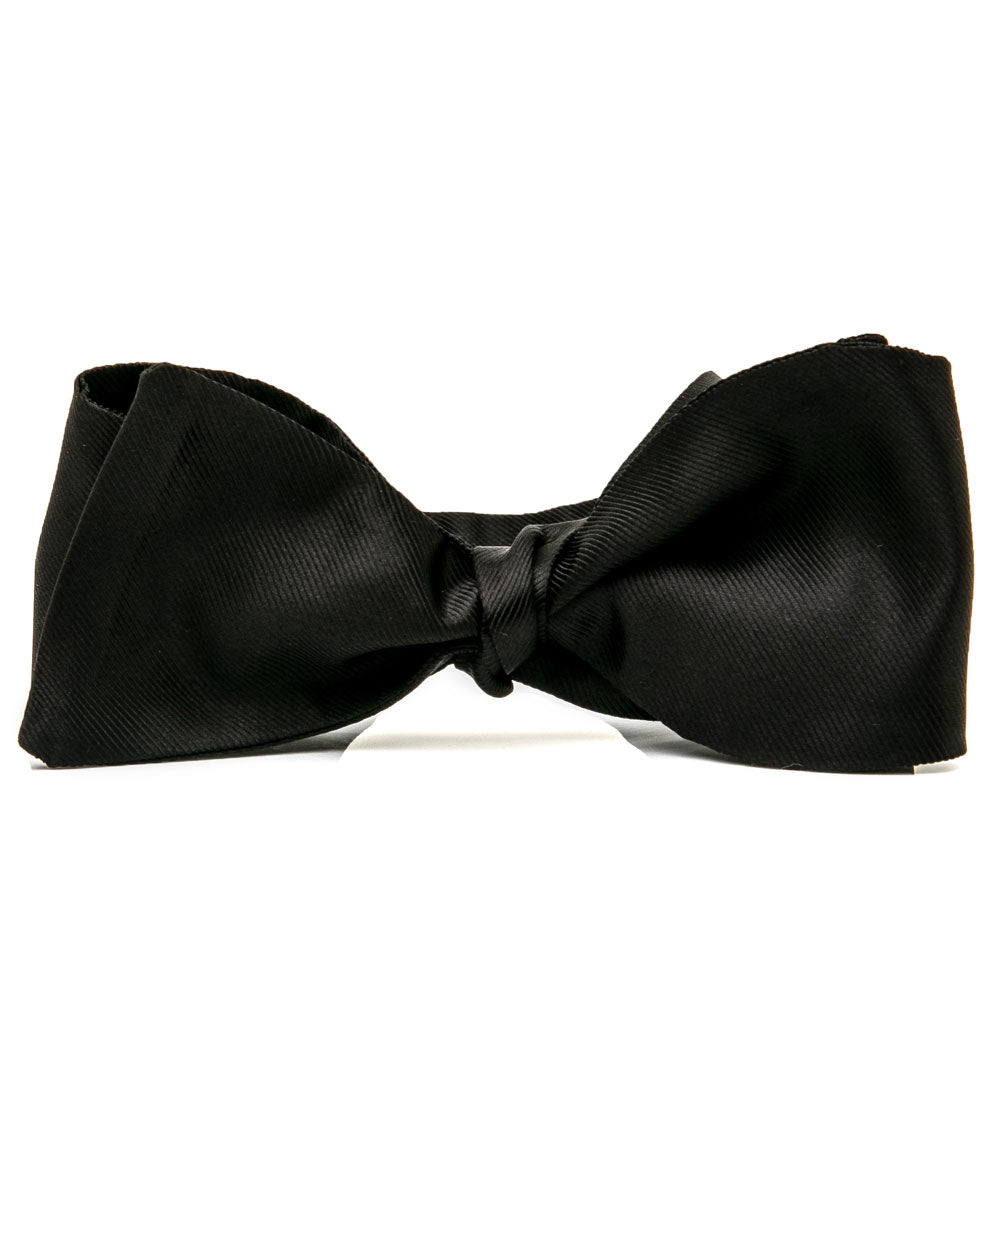 Black Grosgrain Silk Self Tie Bow Tie